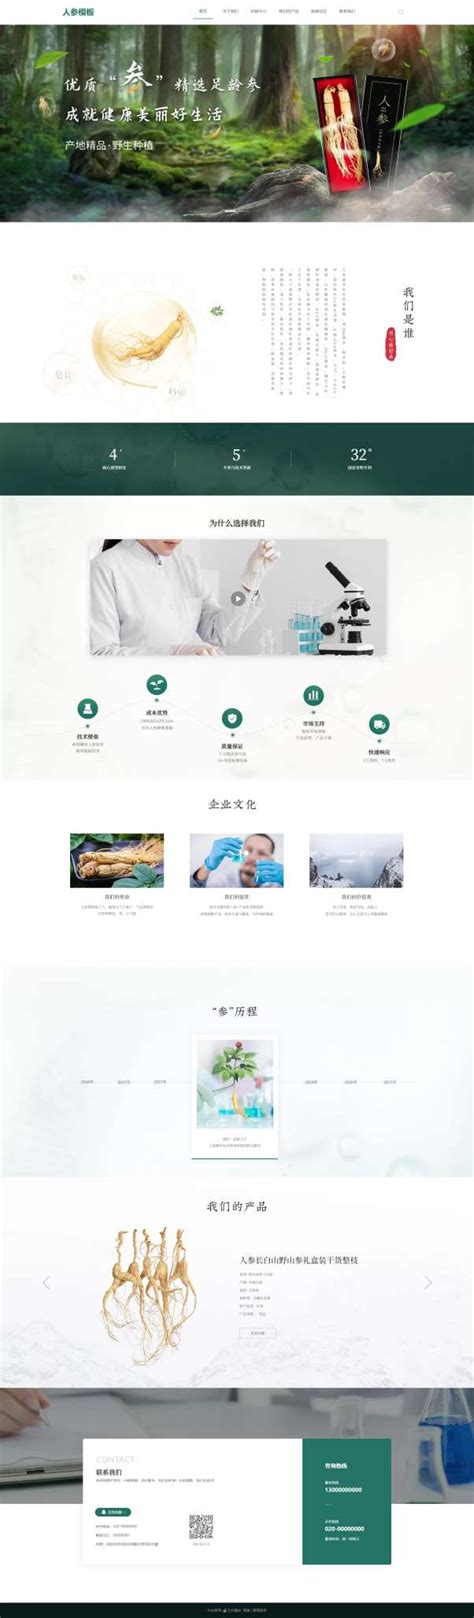 制药厂网页设计模板PSD素材免费下载_红动中国